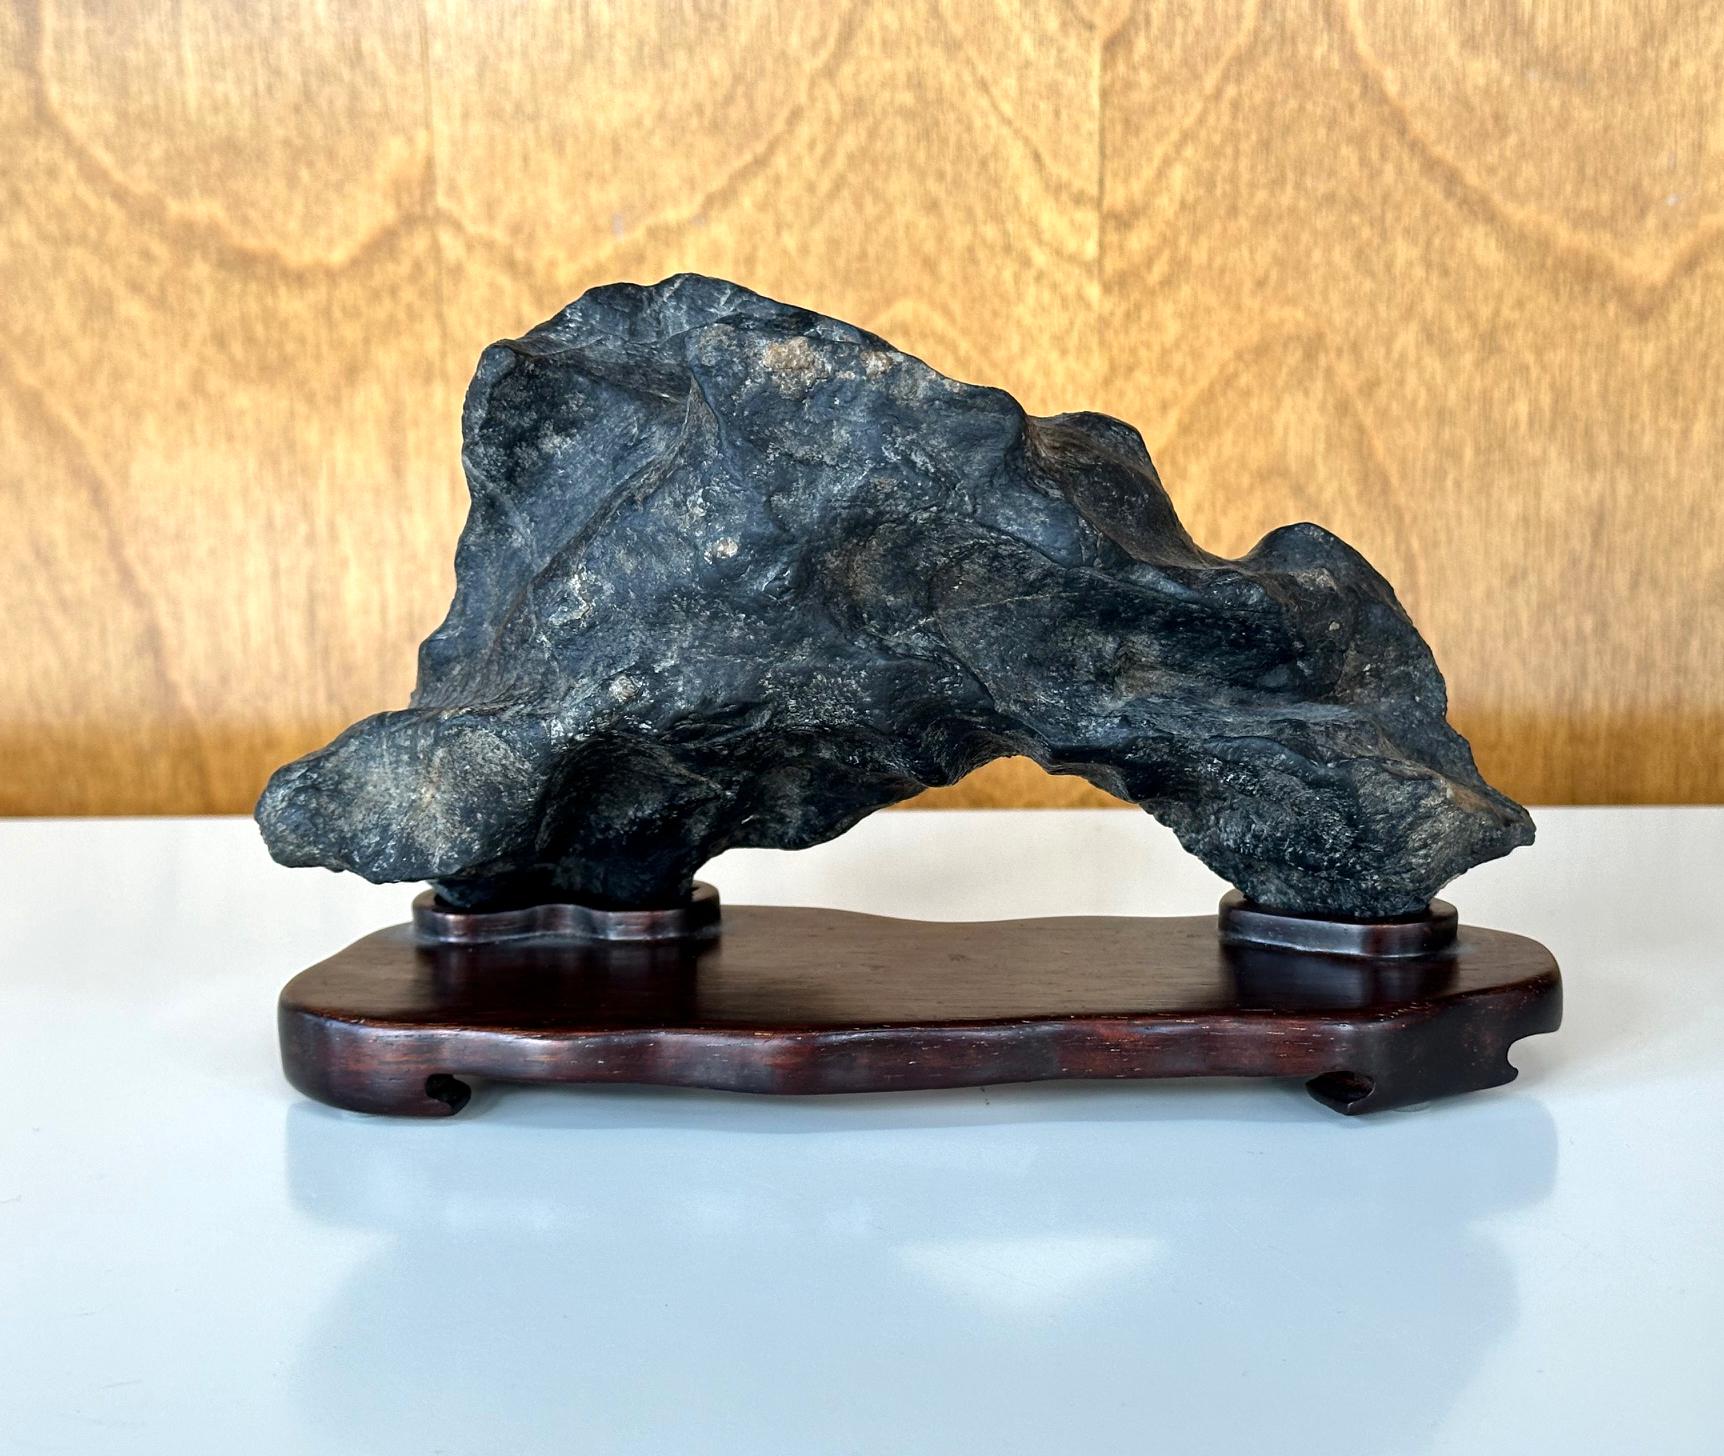 Petite pierre chinoise de bureau (également connue sous le nom de Gong Shi, pierre de méditation et pierre spirituelle) montée sur un support en bois sculpté à la main, vers la fin du 19e siècle. Il s'agit d'une pierre noire de type Lingbi dont la